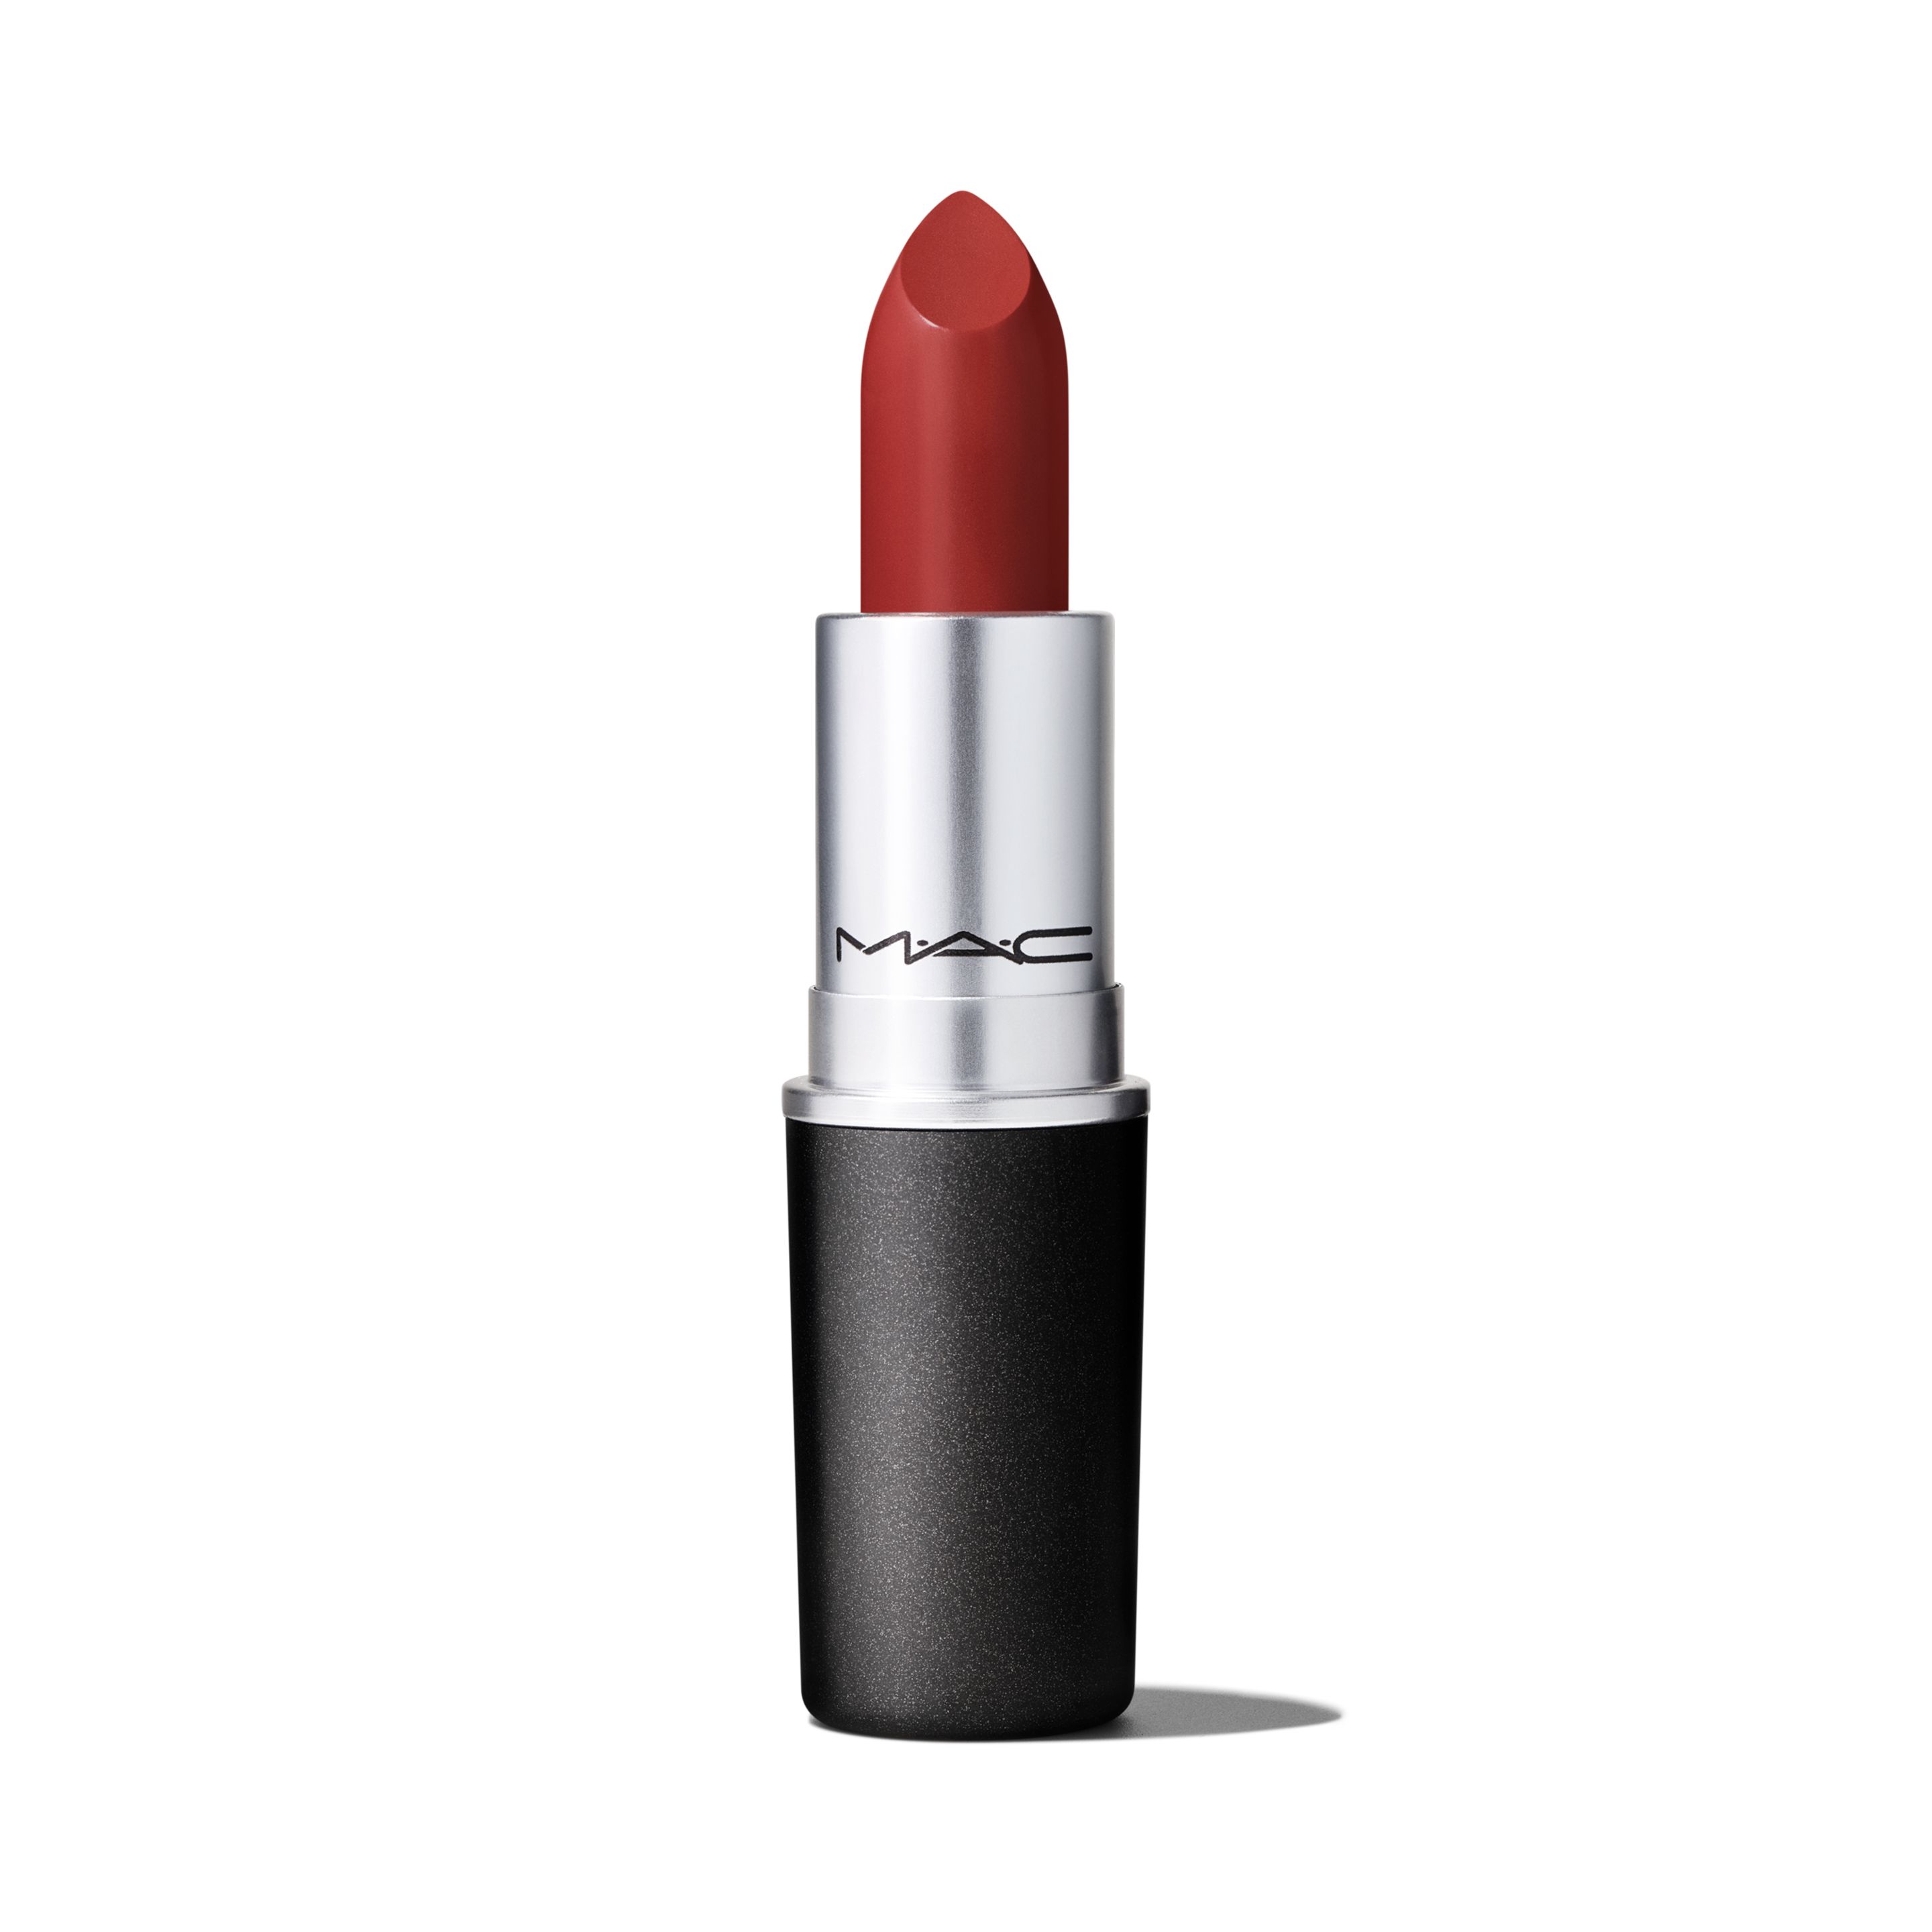 Помада для губ MAC Lipstick Amplified Creme кремовая, тон Dubonnet, 3 г помада mac cosmetics satin lipstick rebel 3 г